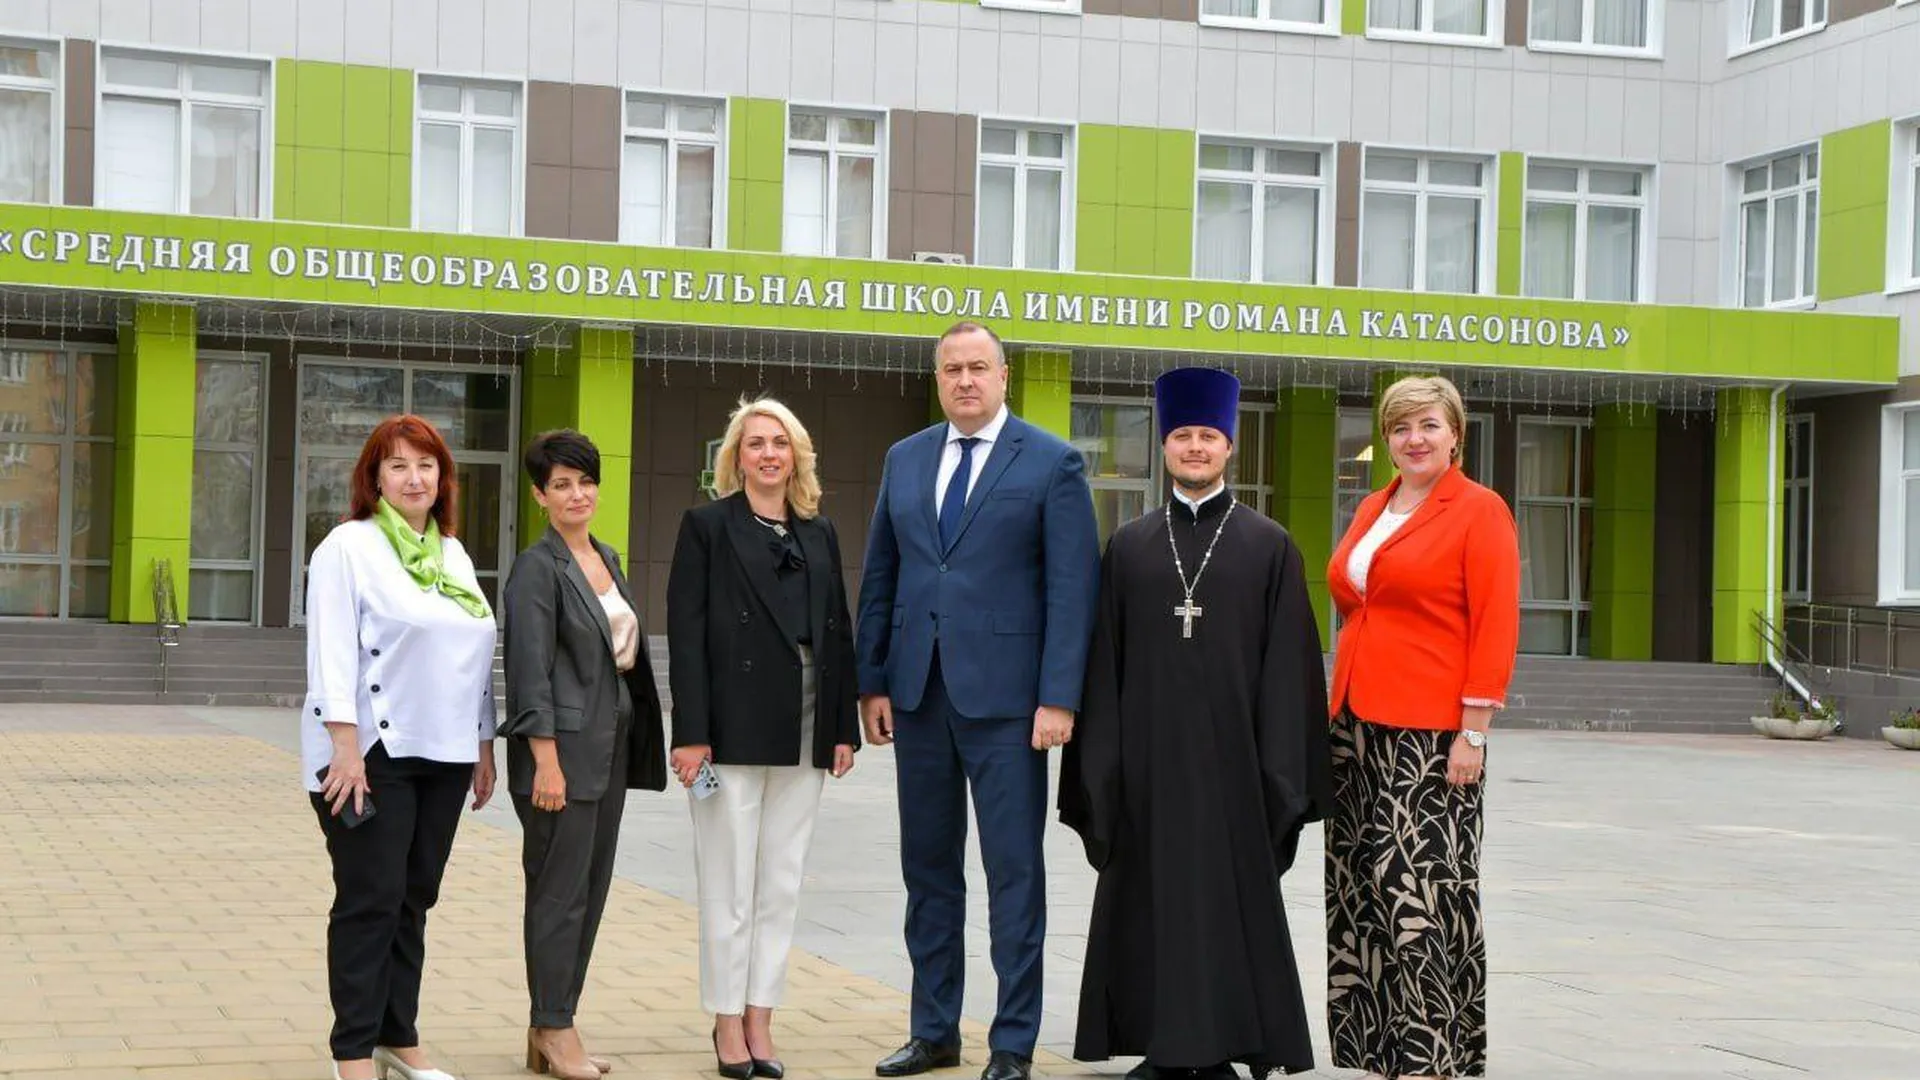 Глава городского округа Серпухов провел встречу с учителями